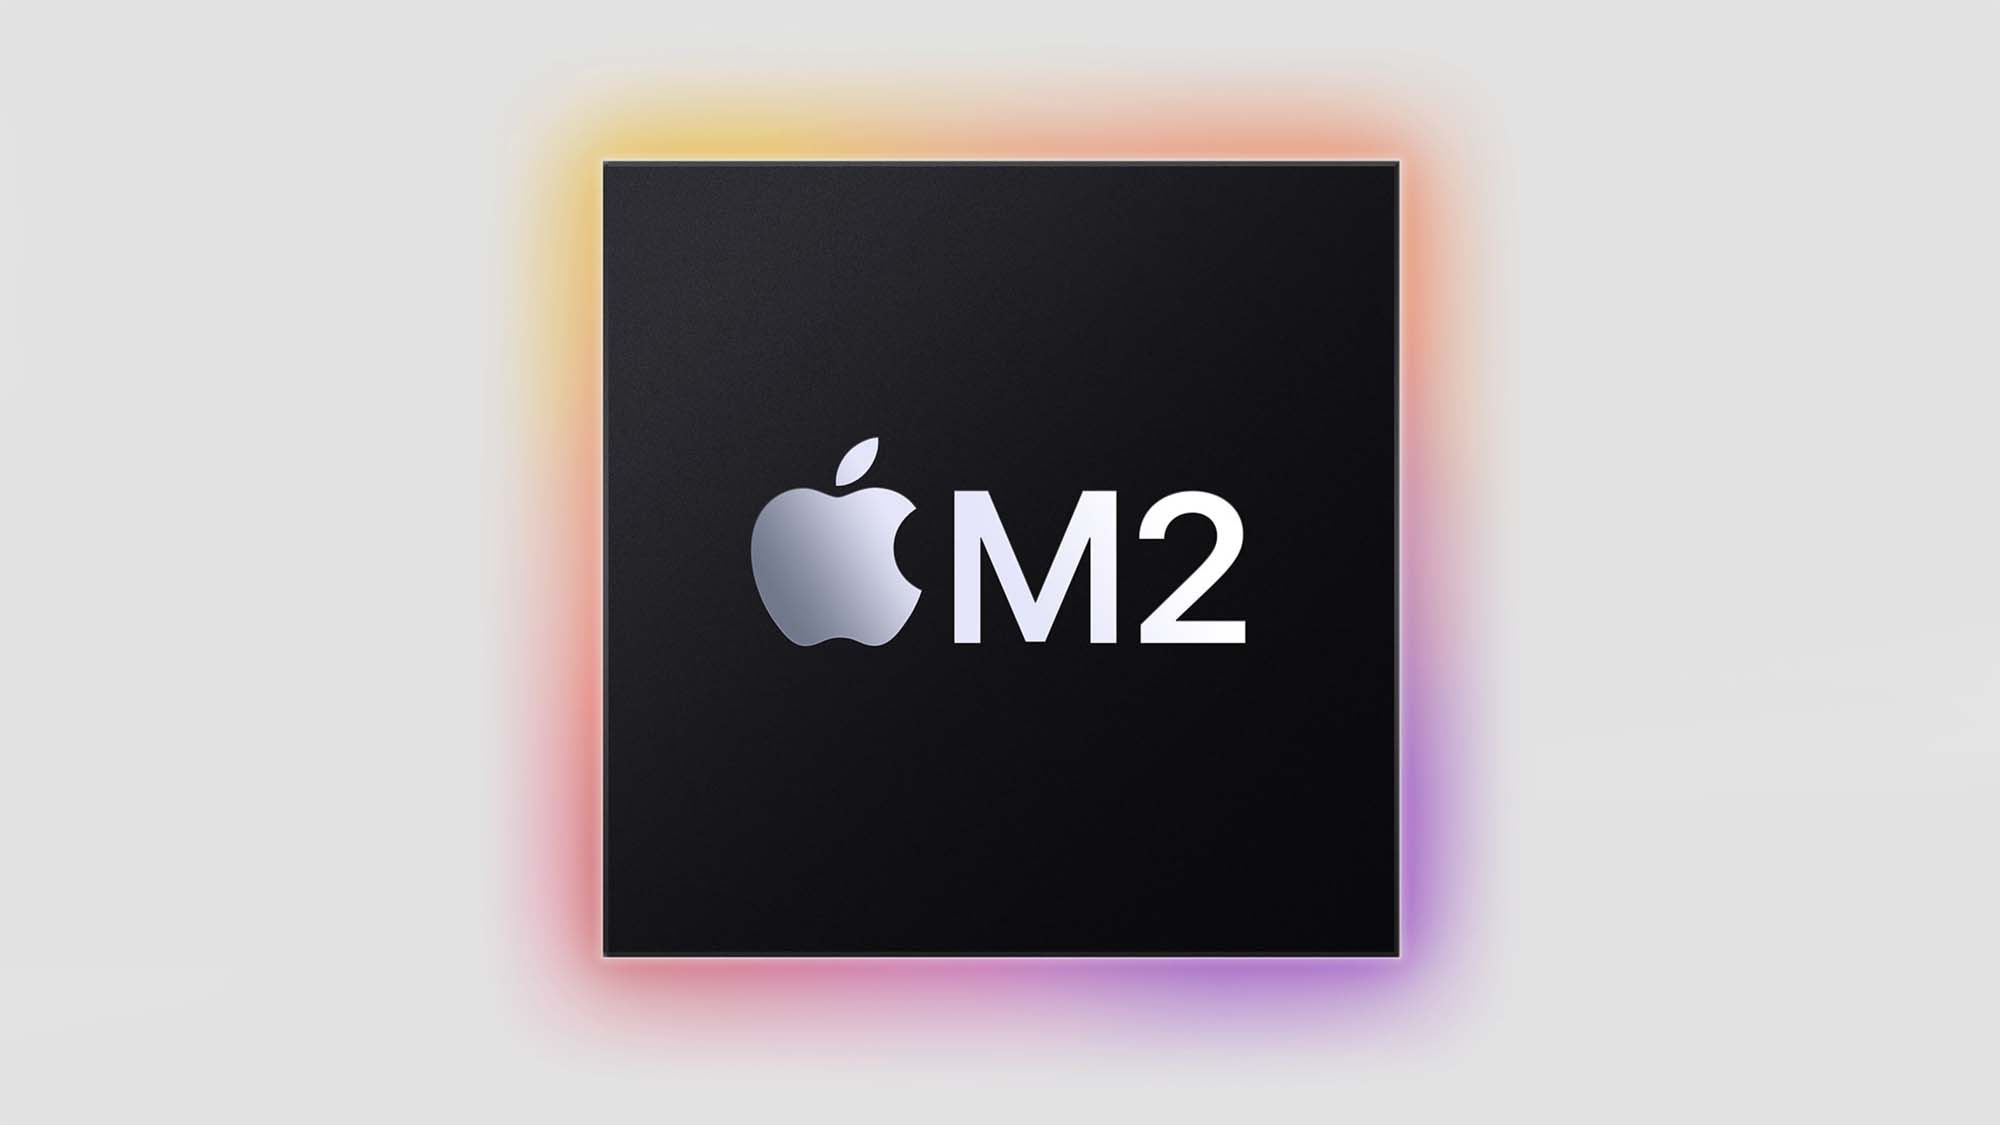 Первый тест Apple M2 появился в сети и показал производительность, сравнимую с Intel i9-12900K